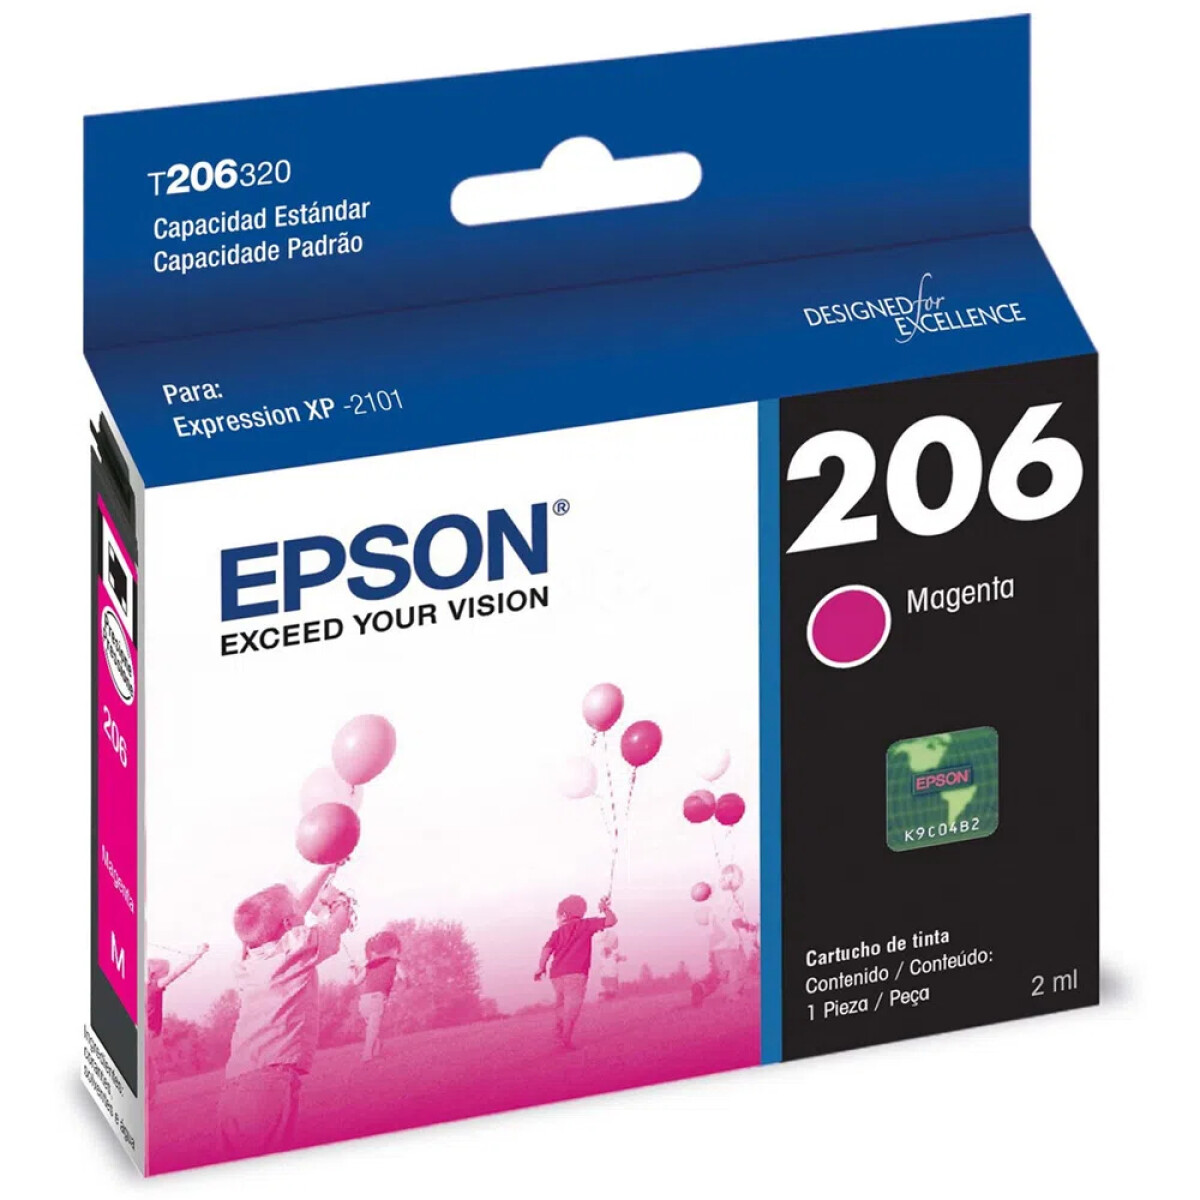 EPSON T206320-AL XP2101 MAGENTA - Epson T206320-al Xp2101 Magenta 